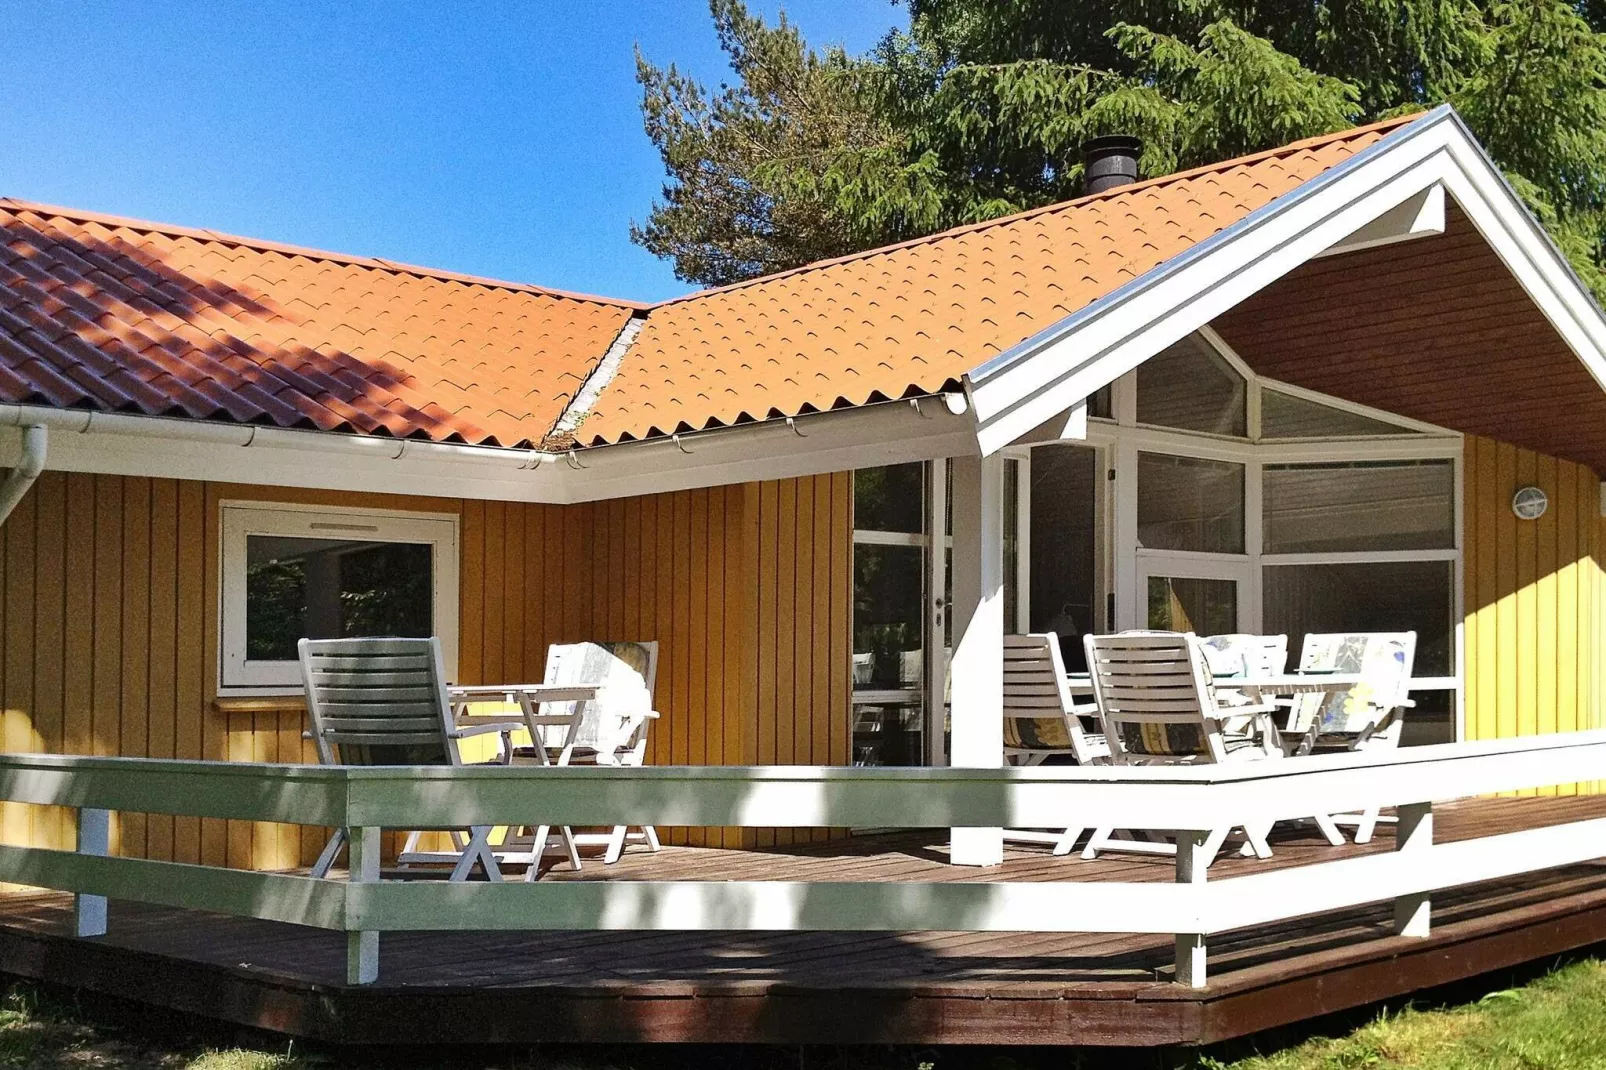 Spectaculair vakantiehuis in Farsø met overdekt terras